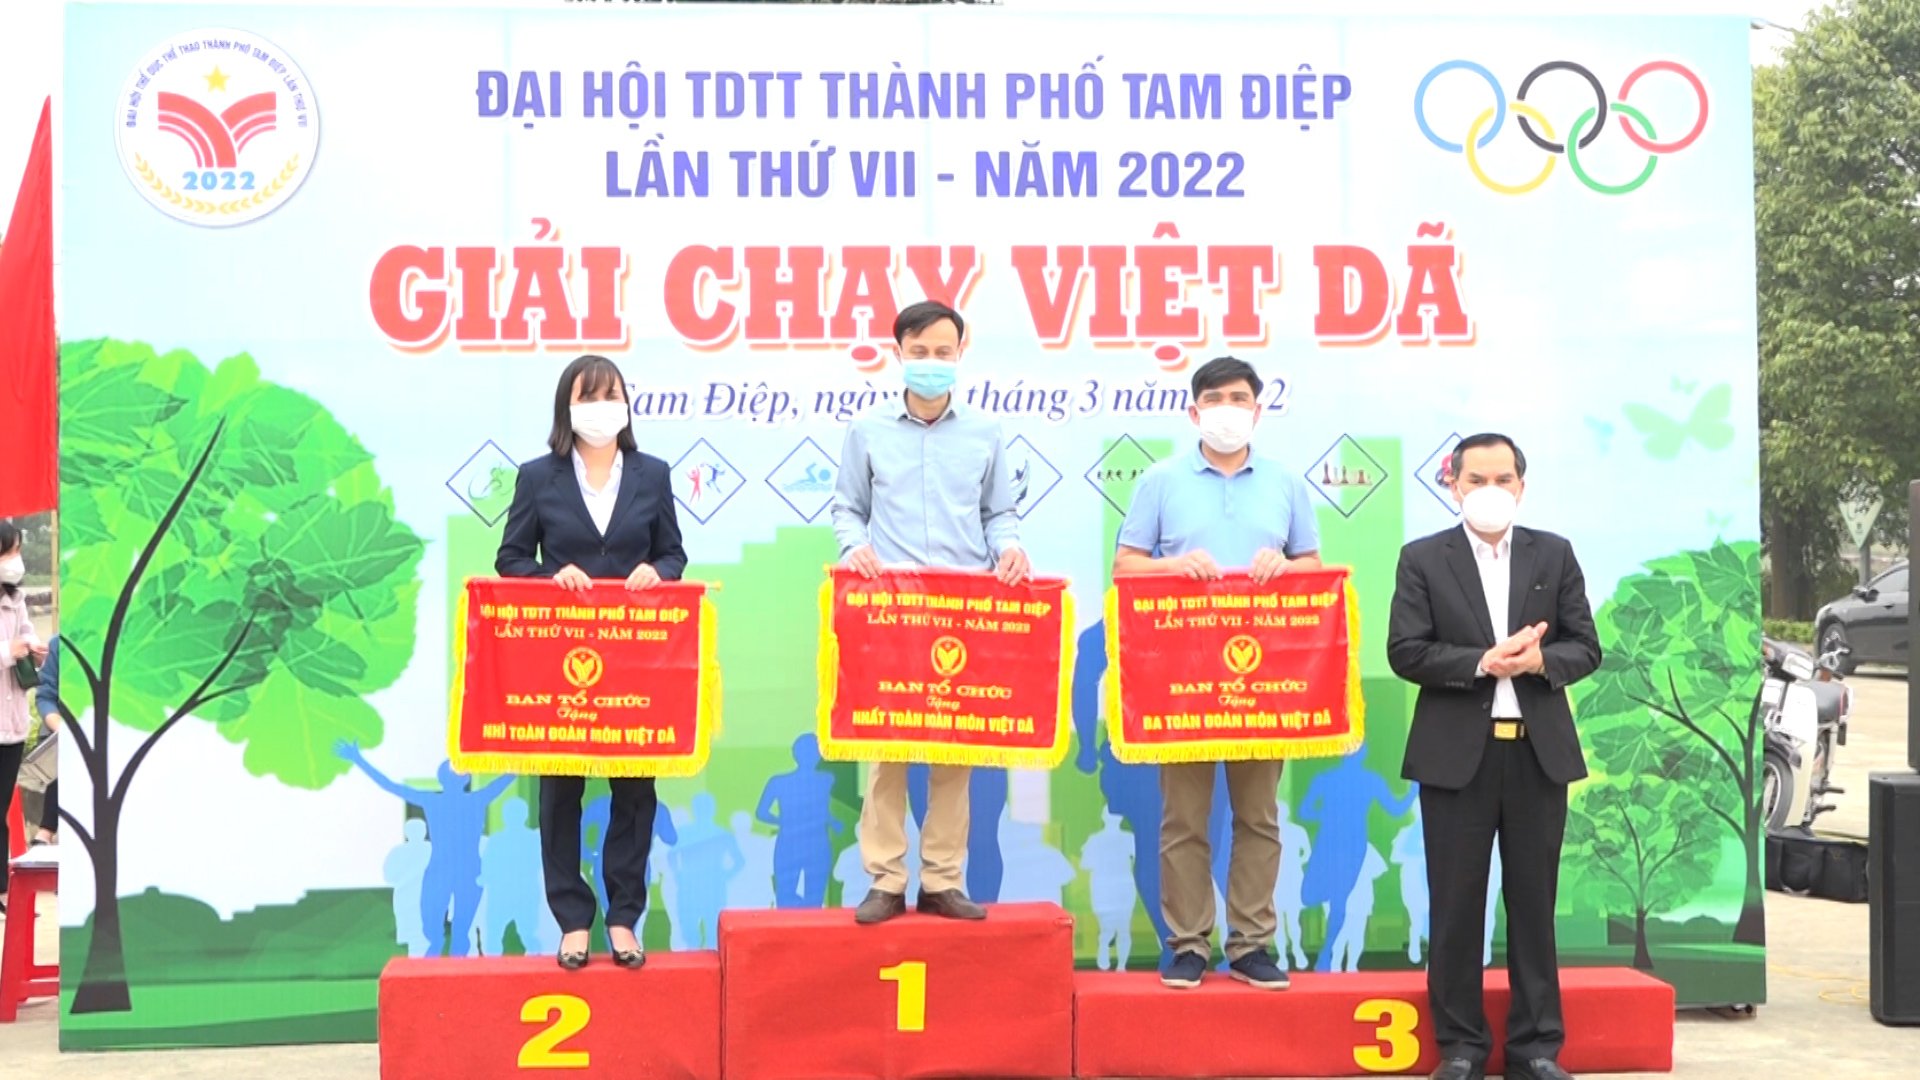 UBND thành phố tổ chức Giải chạy Việt dã trong chương trình thi đấu Đại hội TDTT thành phố lần thứ VII, năm 2022 